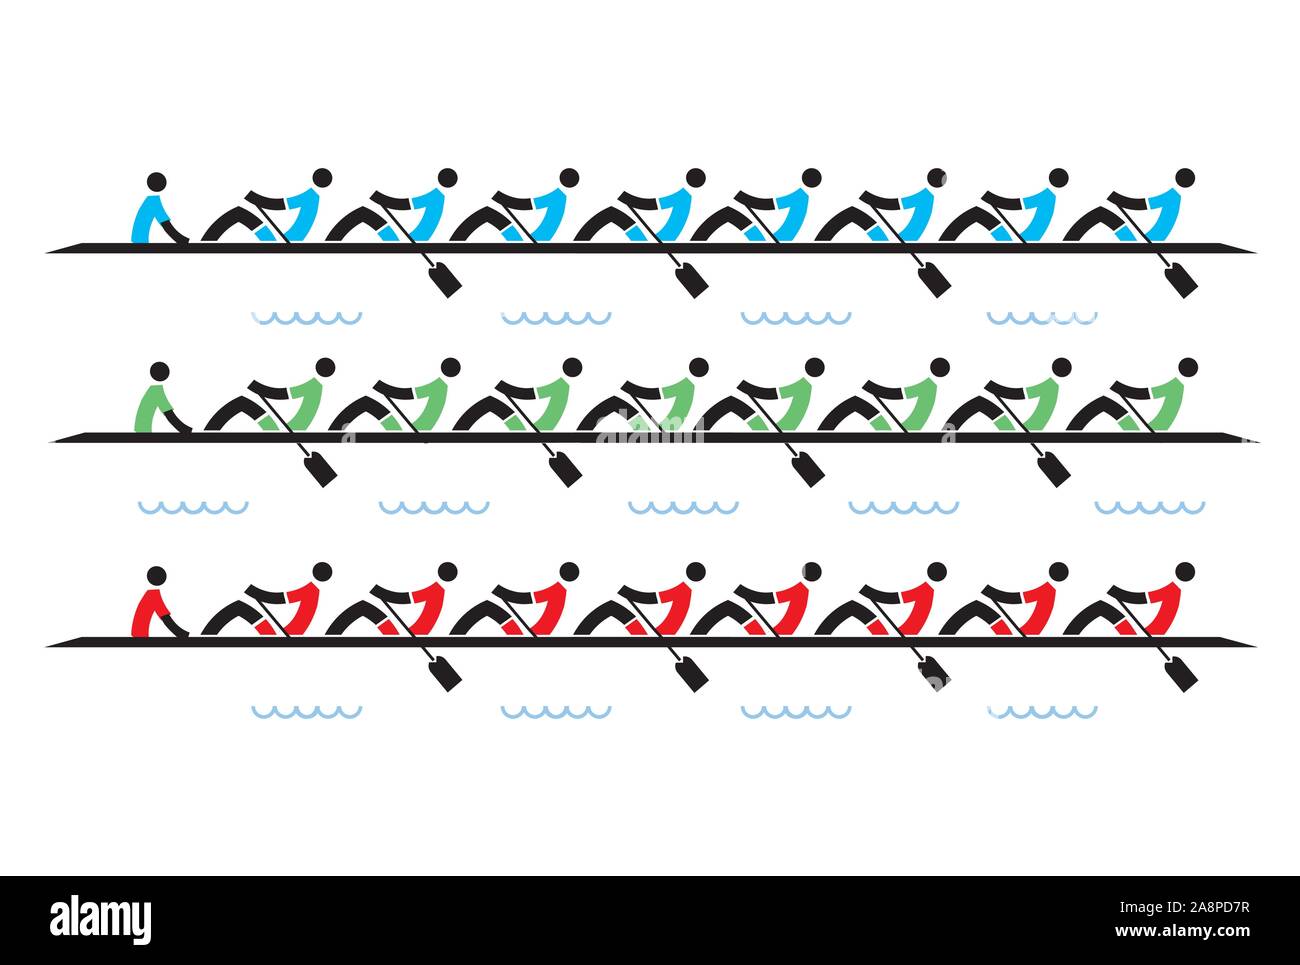 Rudern Rennen der Achter, Icons. Stilisierte Darstellung von Ruderern Wettbewerber auf weißem Hintergrund. Vector zur Verfügung. Stock Vektor